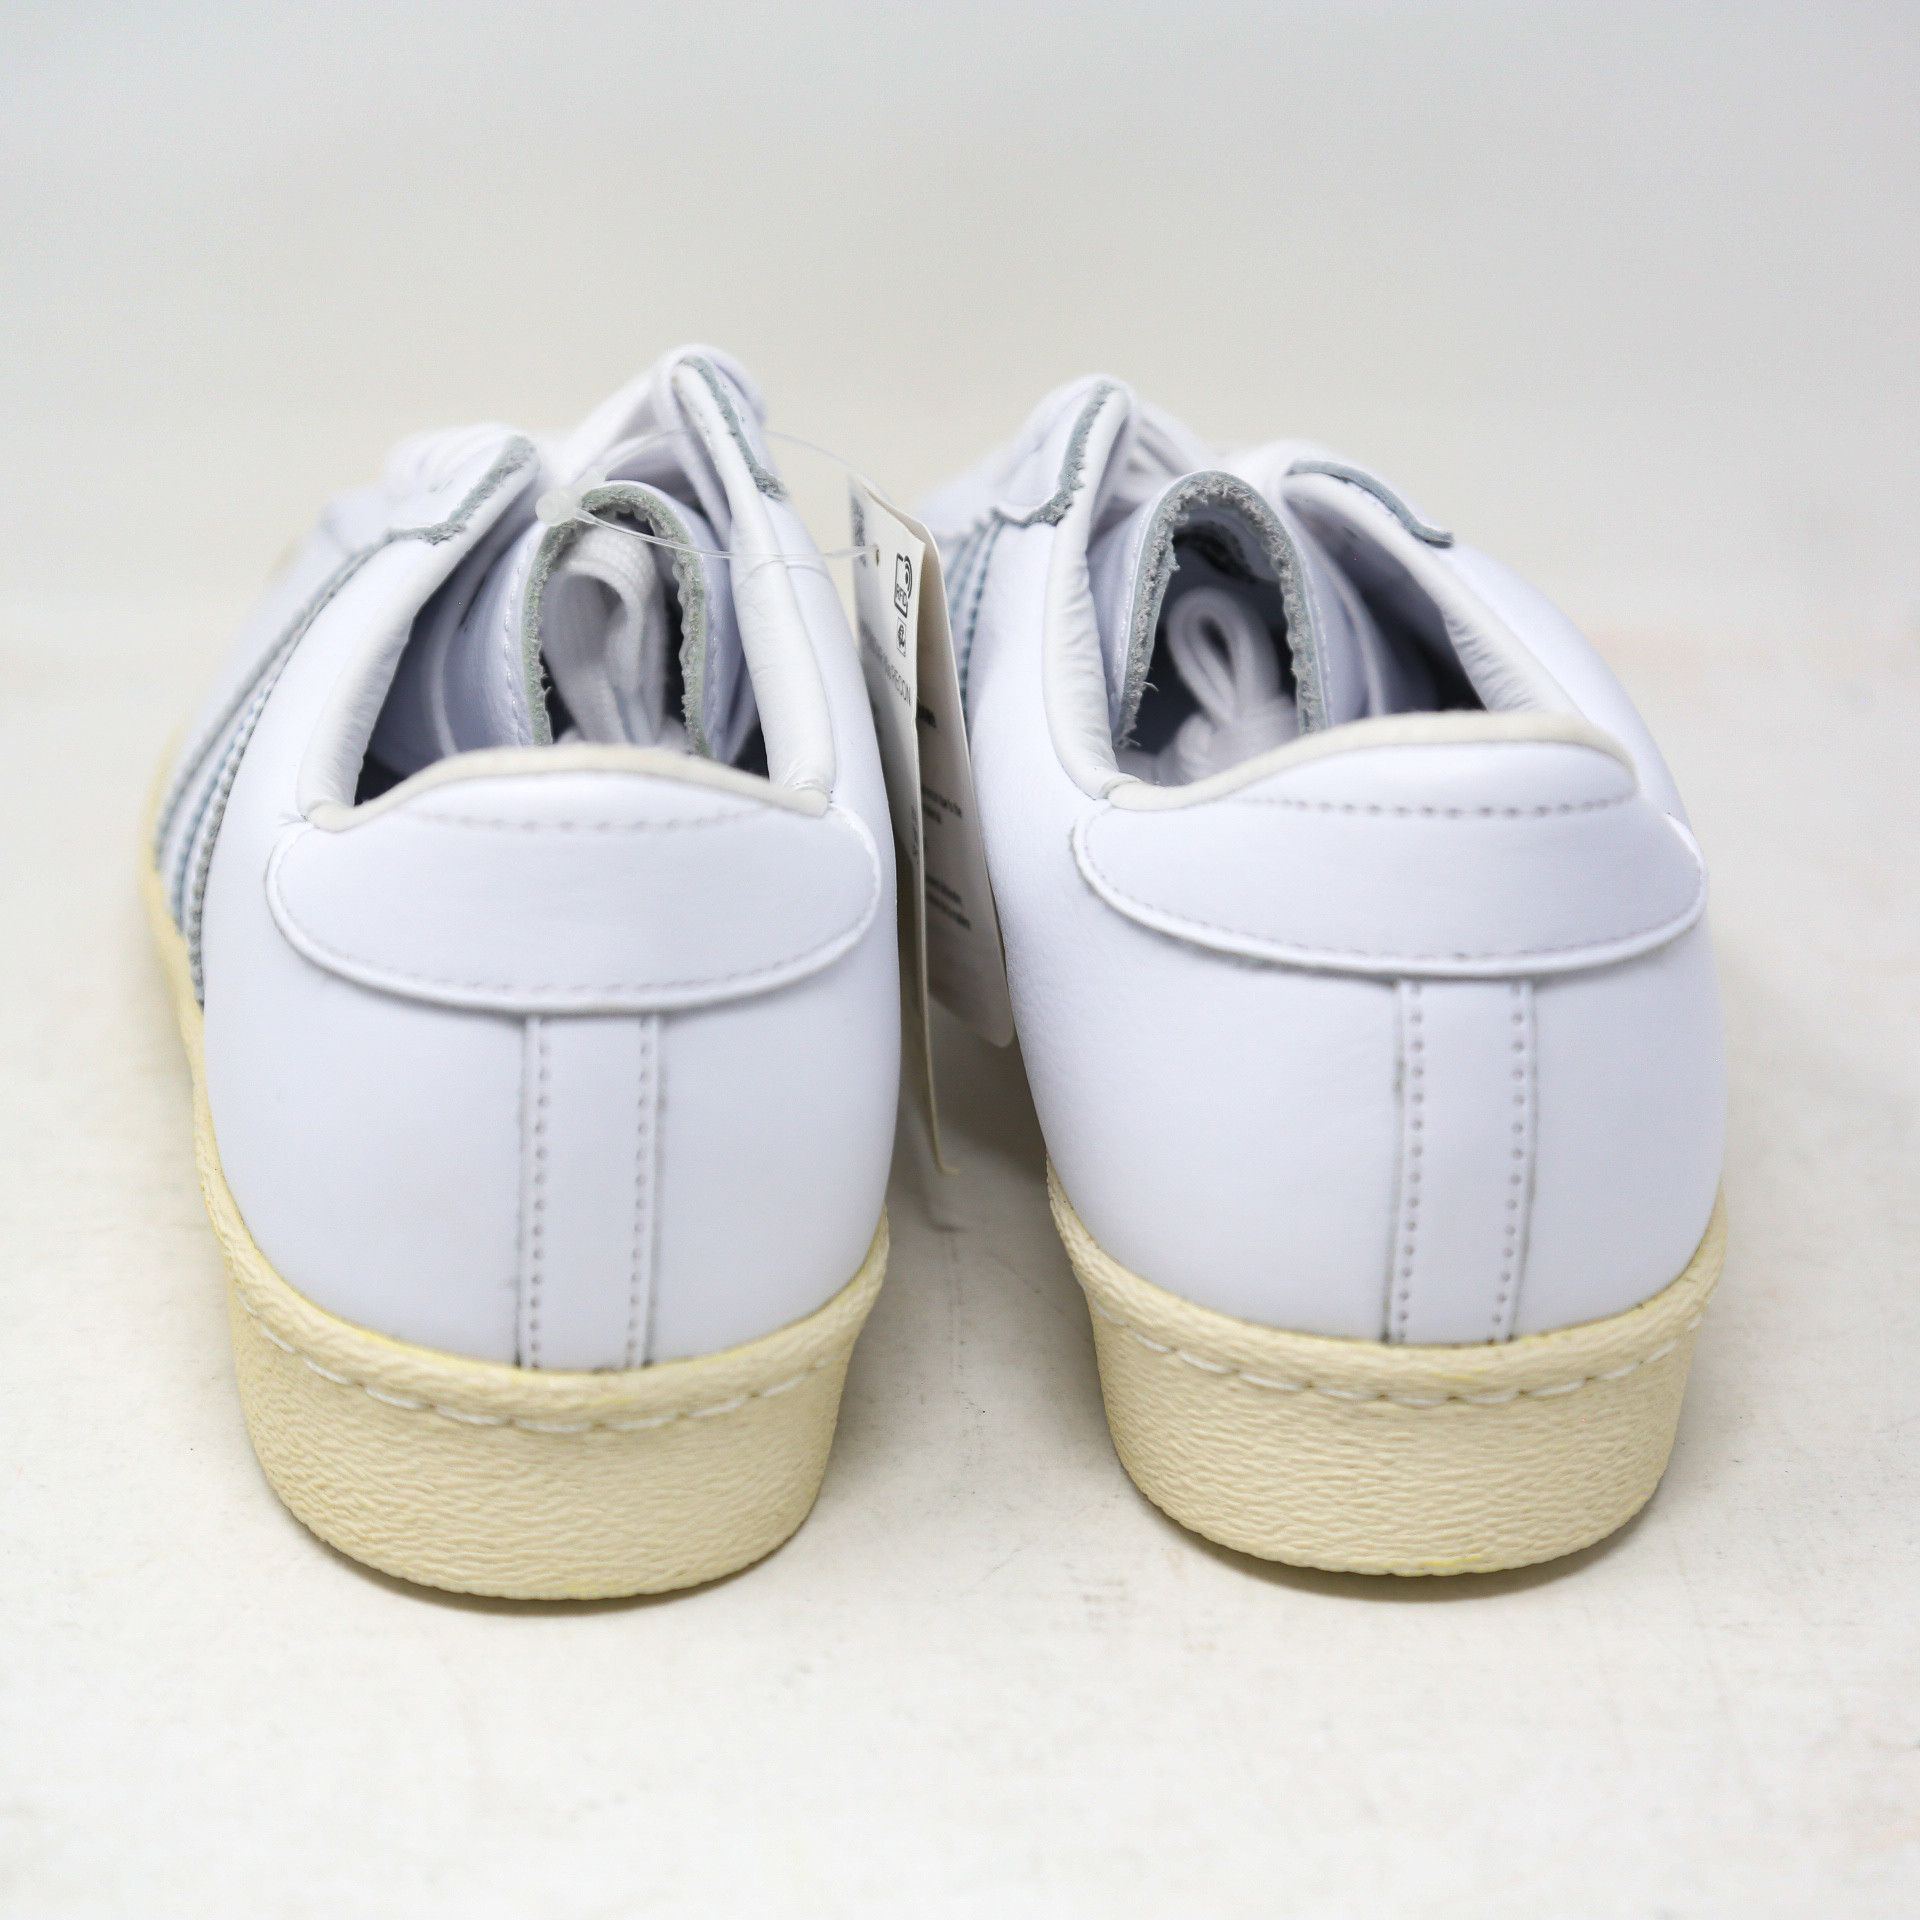 Adidas Superstar 80s Recon Off-White EE7392 Retro size 11 Size US 11 / EU 44 - 5 Thumbnail